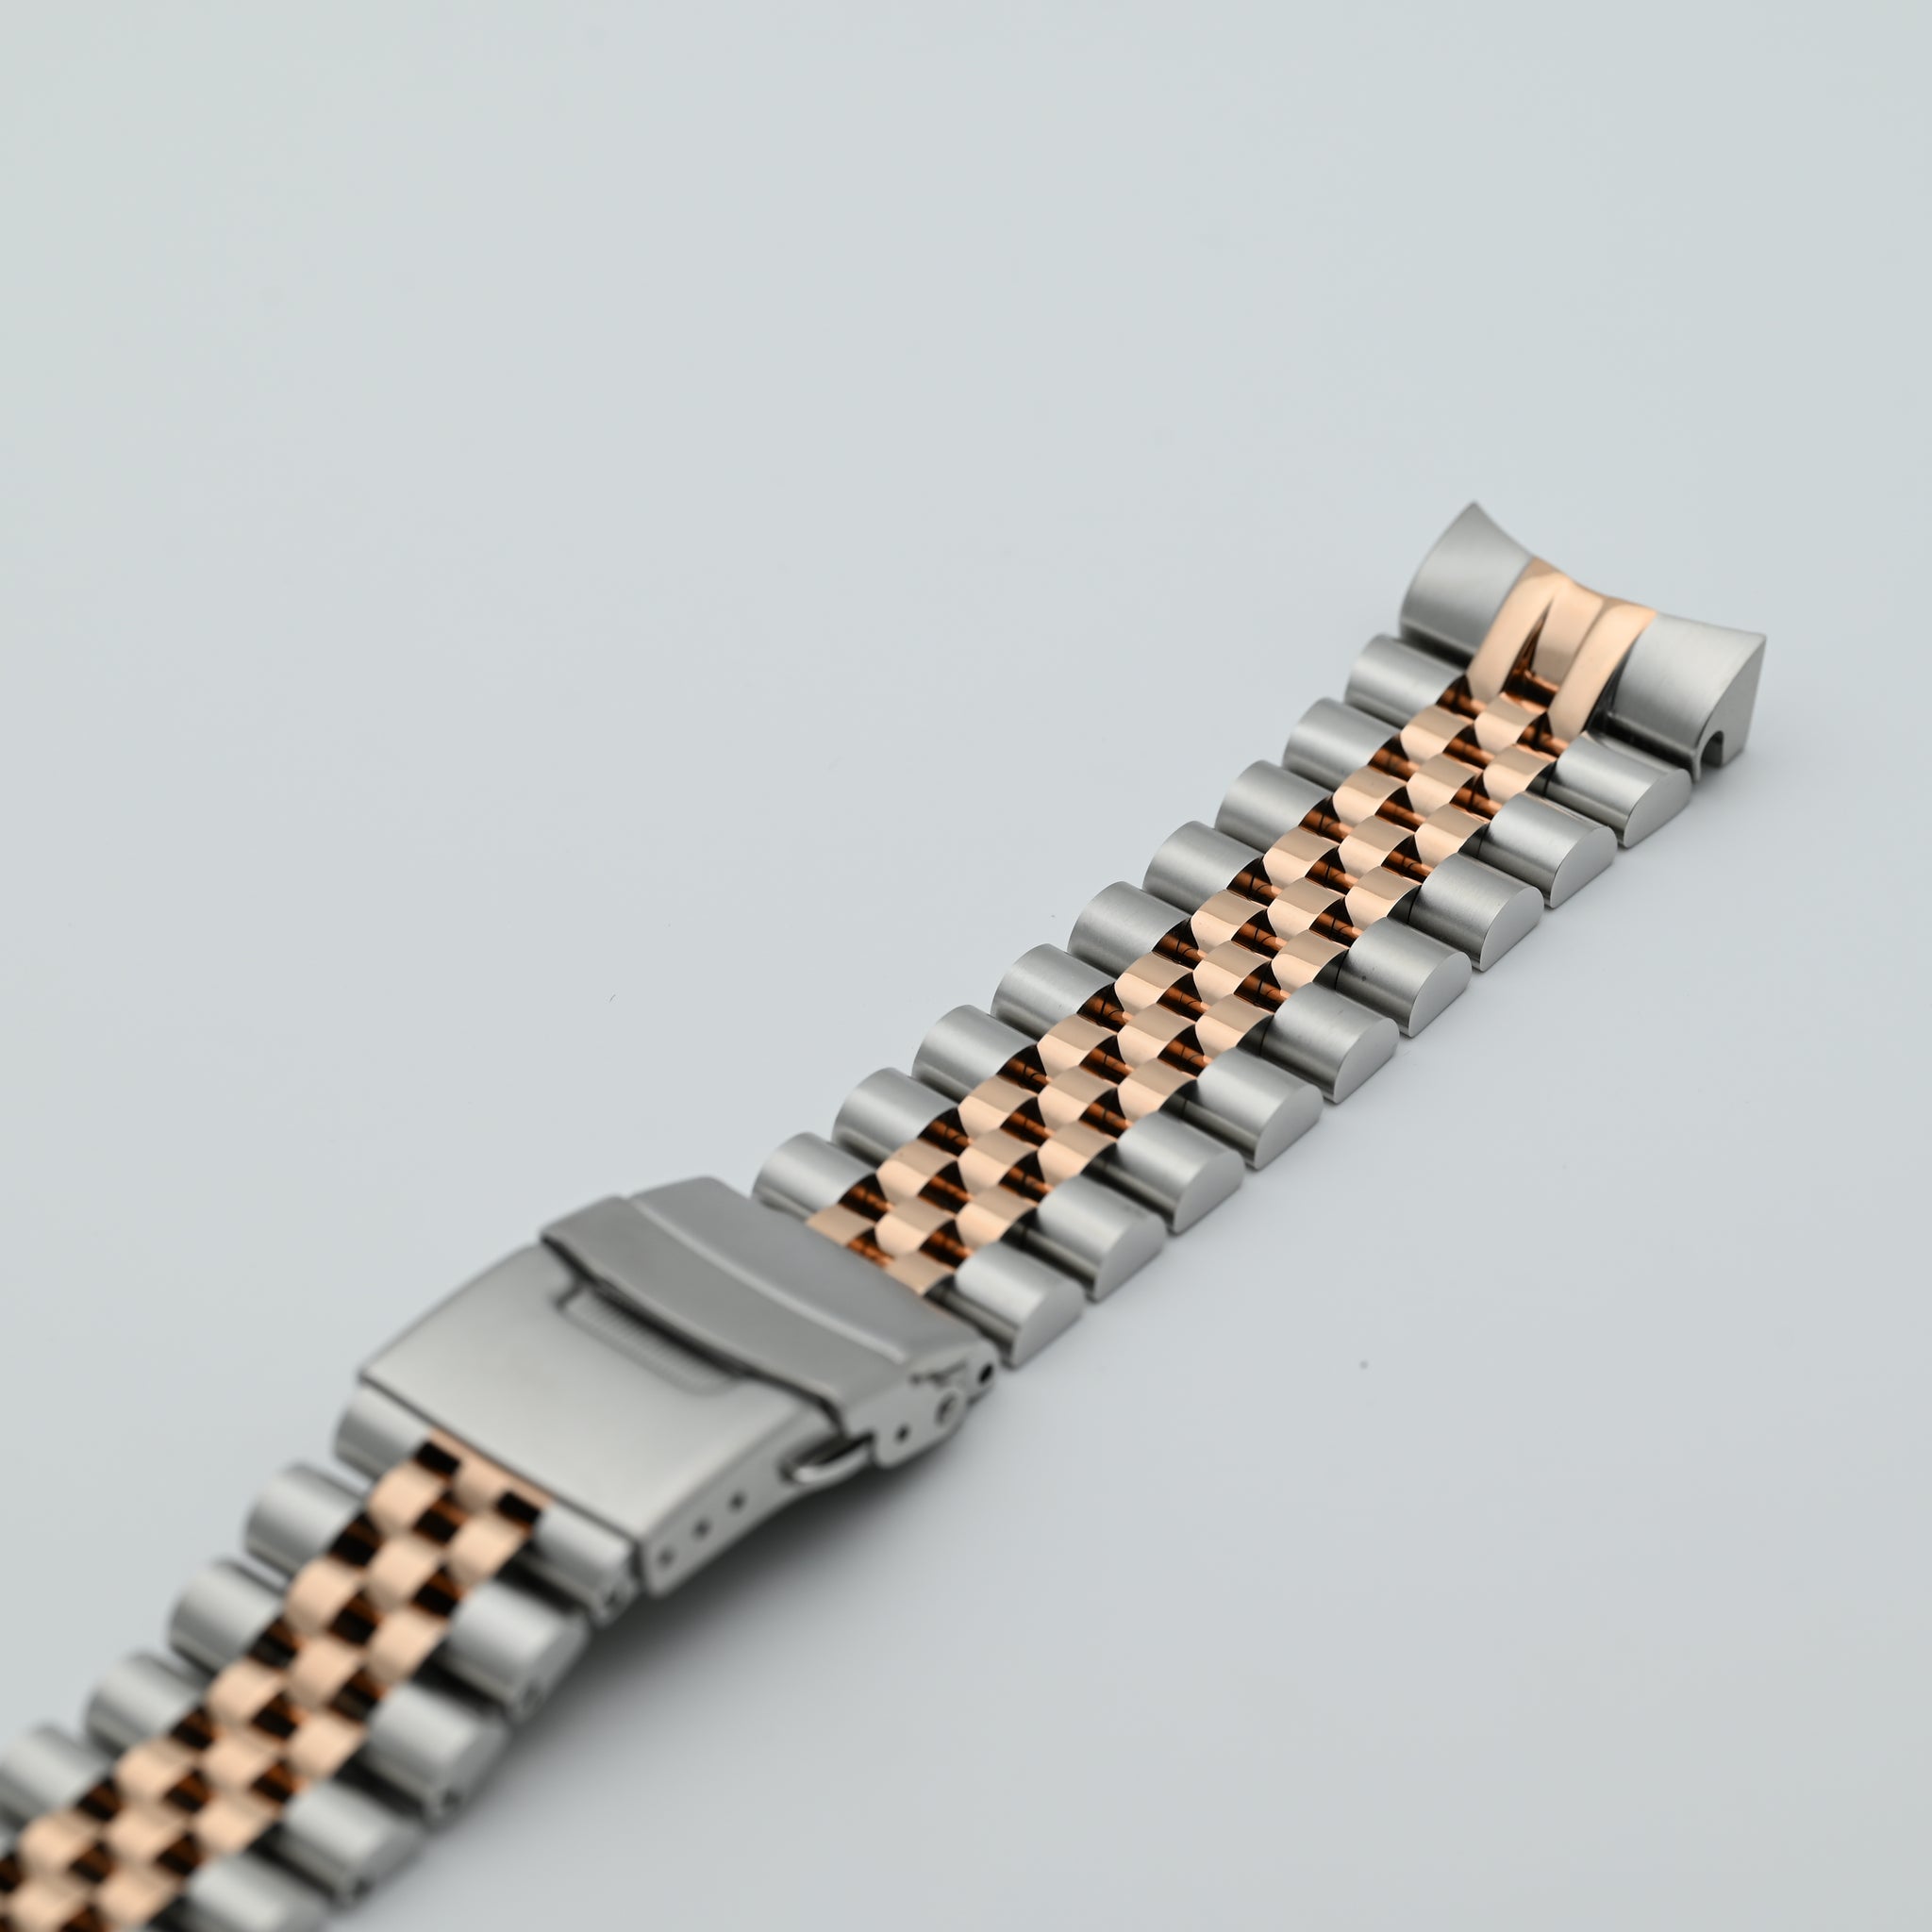 MOD Silicone Bracelet - Platinum Band w/Brushed Rose Gold Sleeve & Clasp